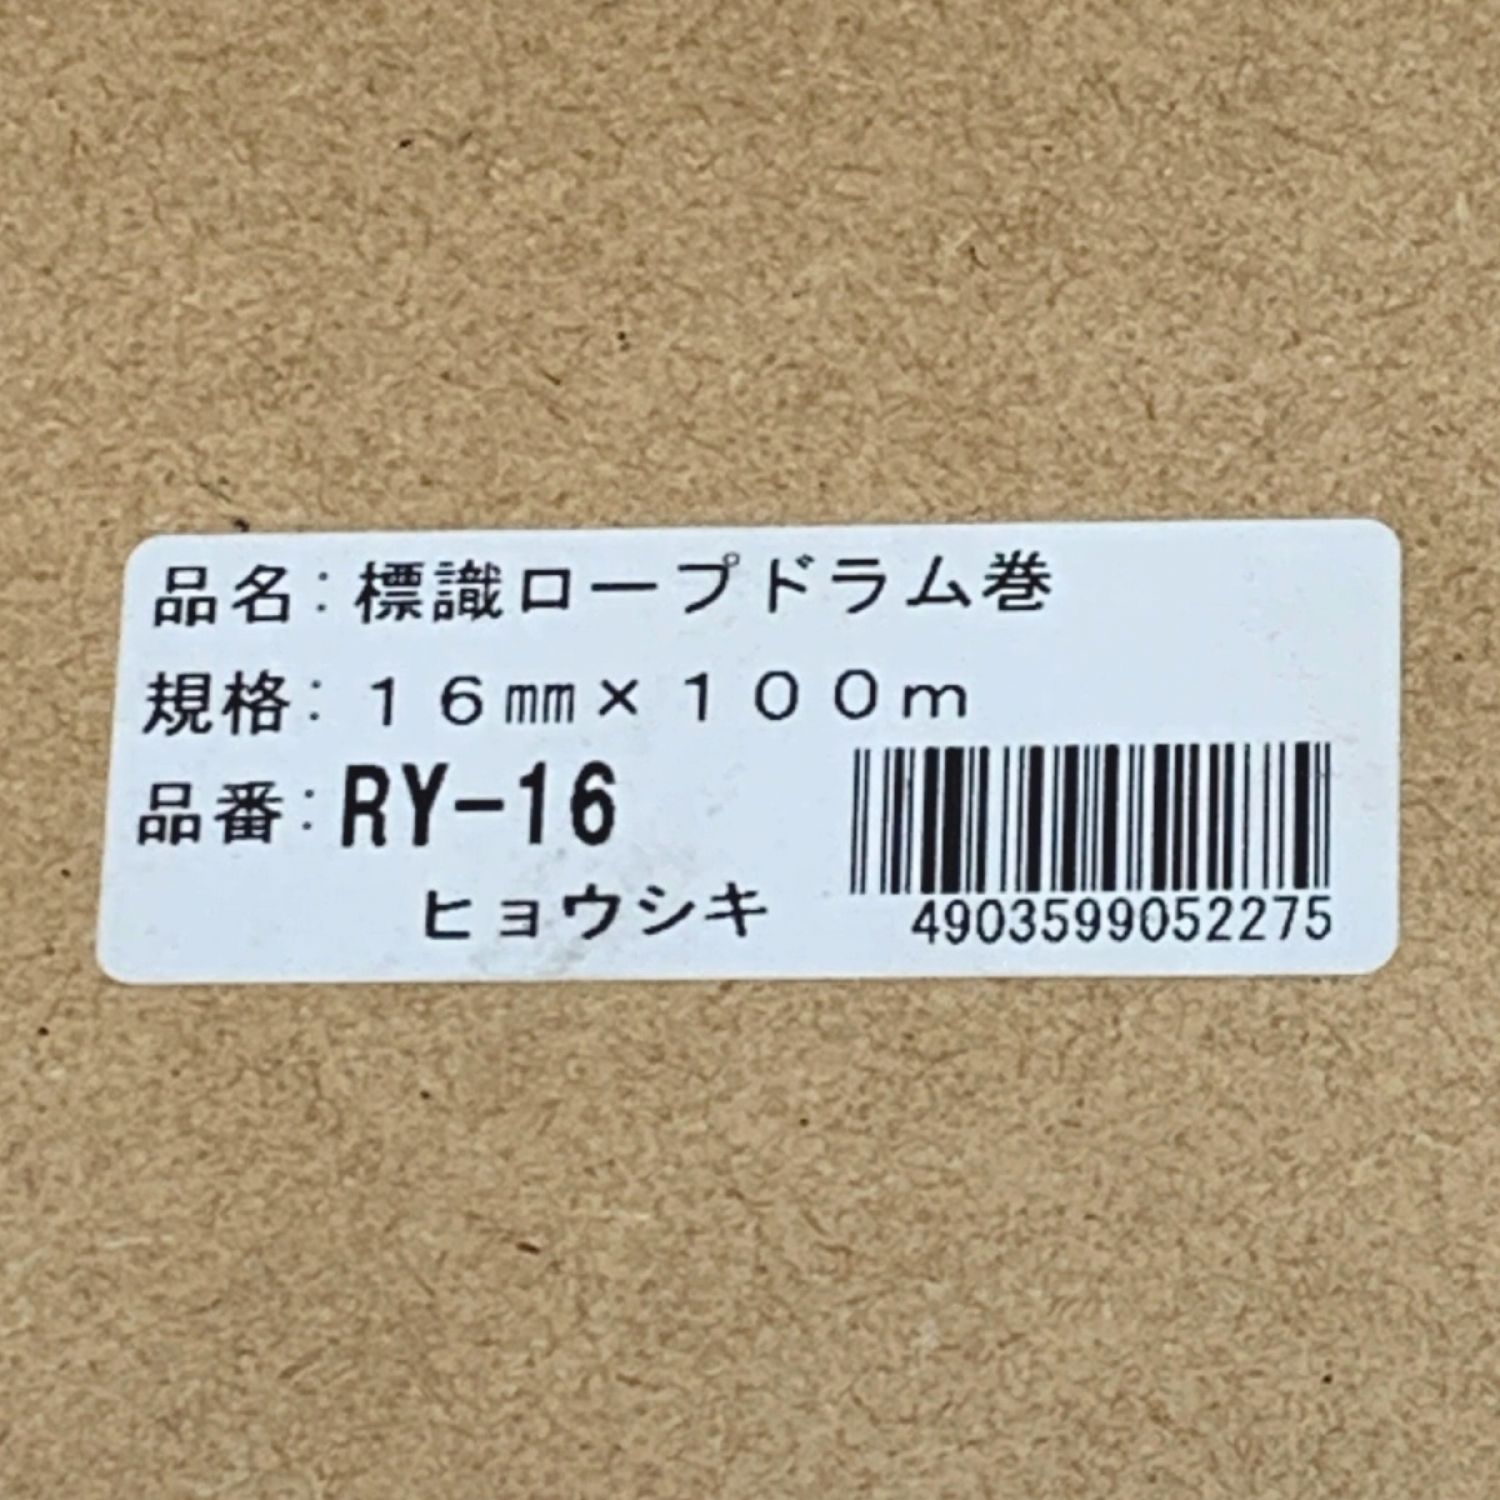 ユタカメイク 標識ロープドラム巻 16mm×100m PRY-16 (株)ユタカメイク - 2